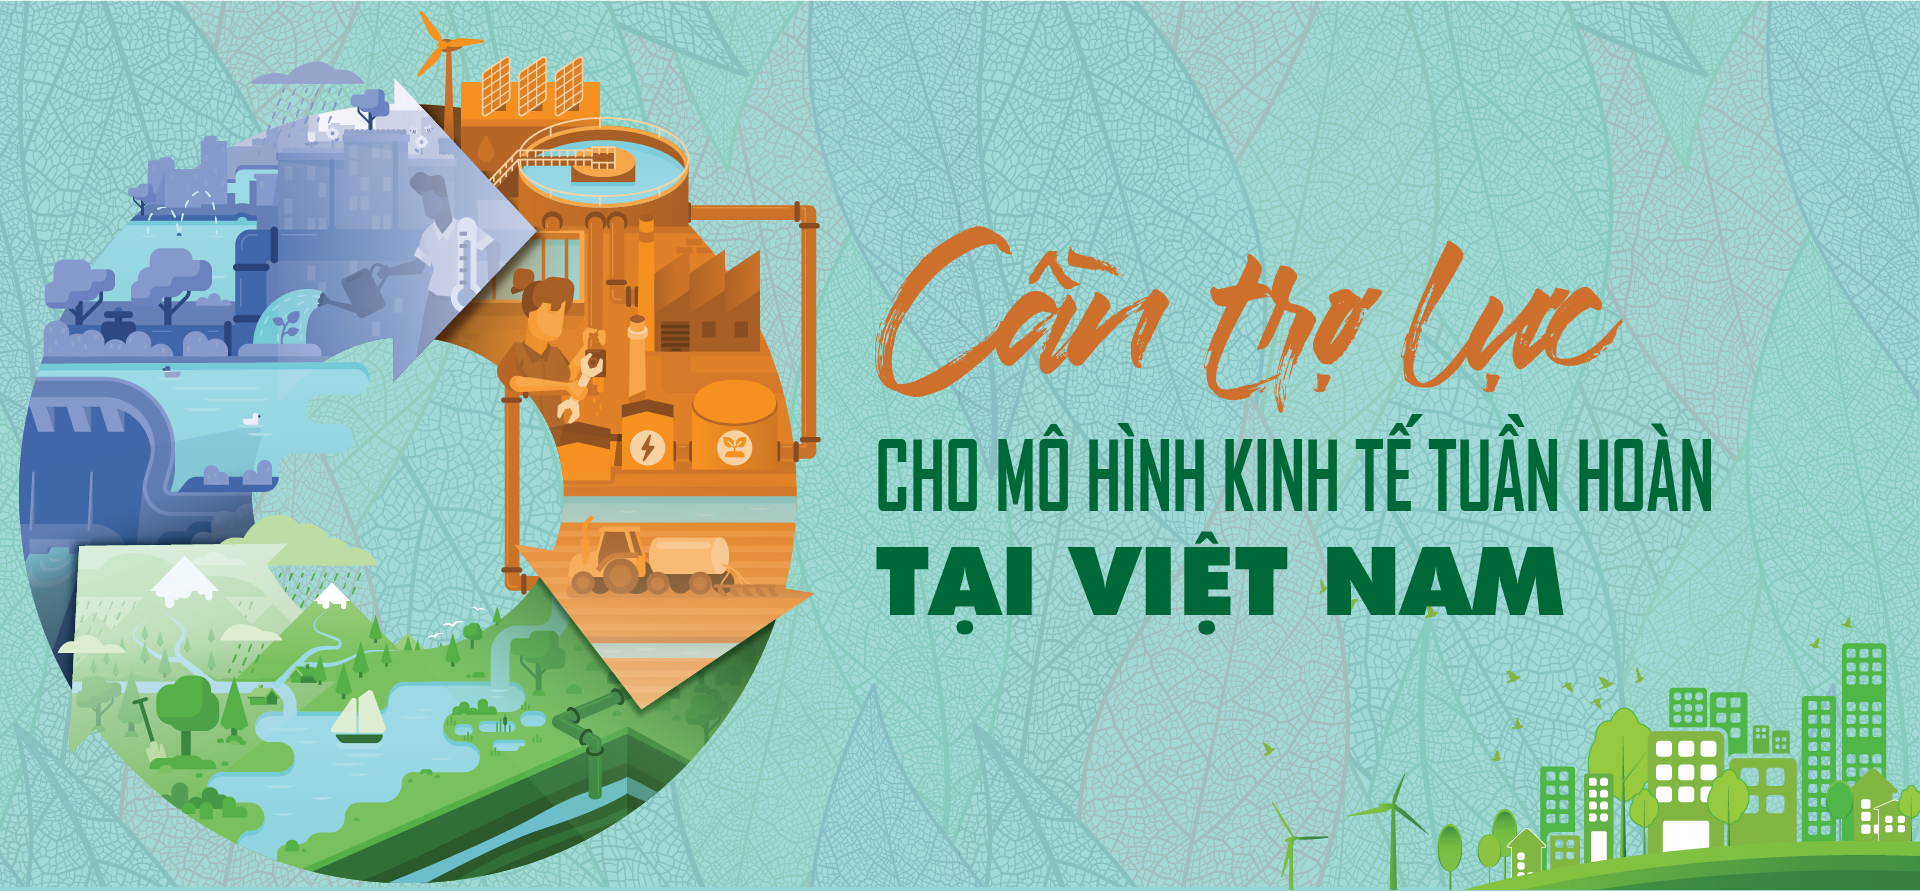 Cần trợ lực cho mô hình kinh tế tuần hoàn tại Việt Nam - Ảnh 1